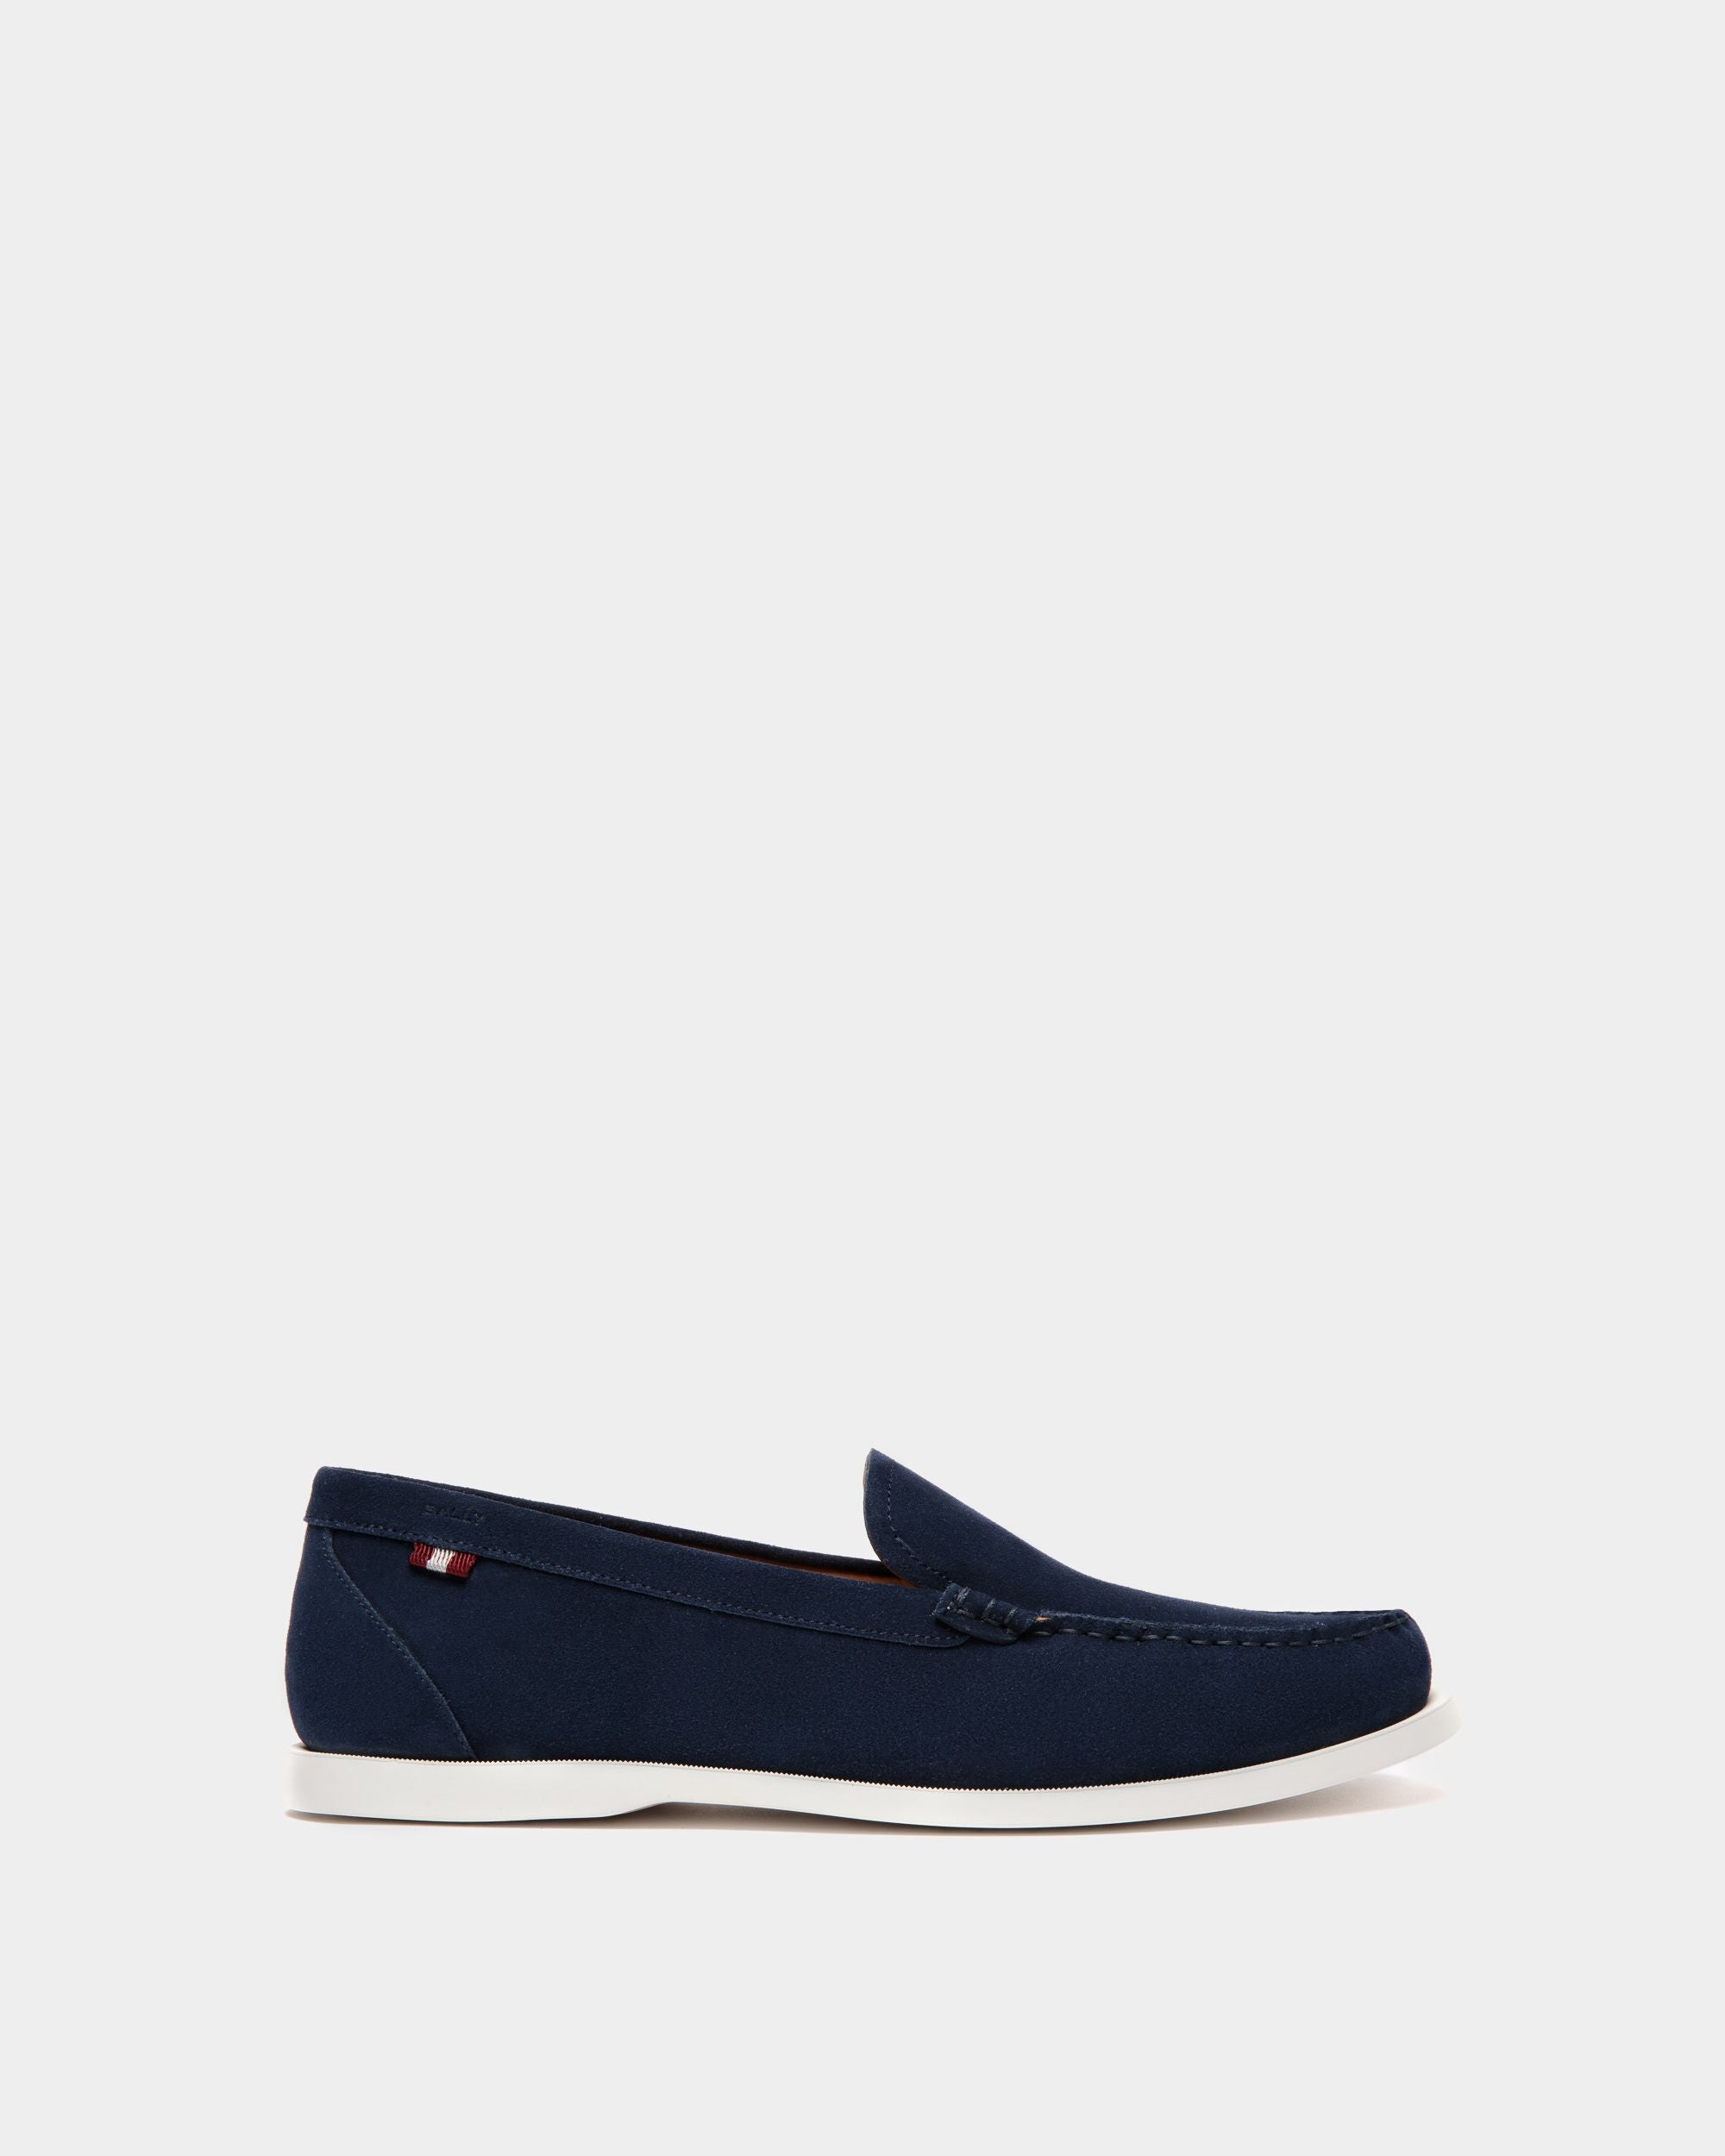 Nelson | Loafers für Herren aus Veloursleder in Blau | Bally | Still Life Seite